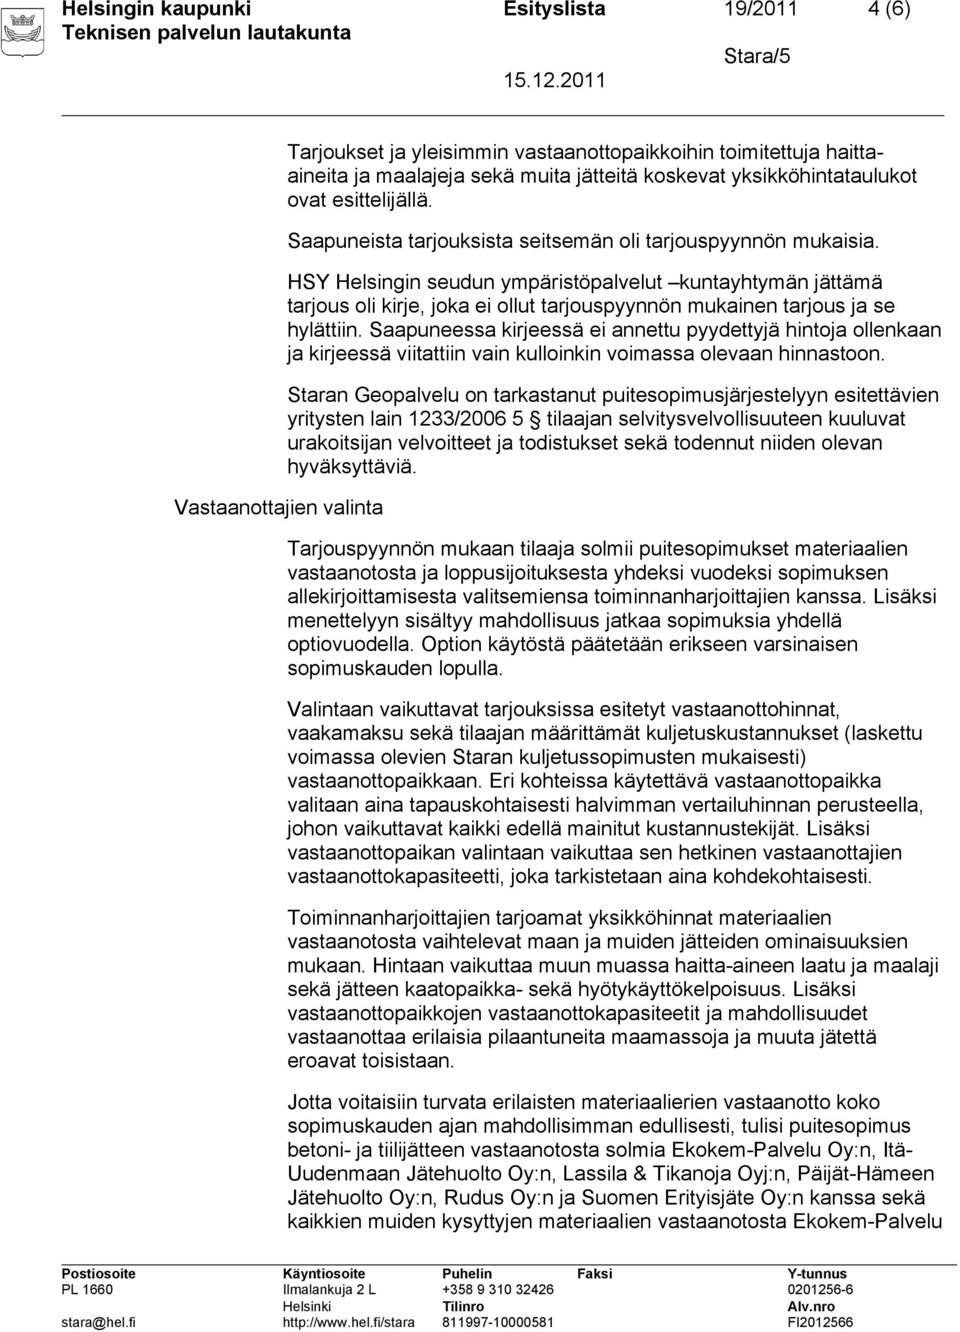 HSY Helsingin seudun ympäristöpalvelut kuntayhtymän jättämä tarjous oli kirje, joka ei ollut tarjouspyynnön mukainen tarjous ja se hylättiin.